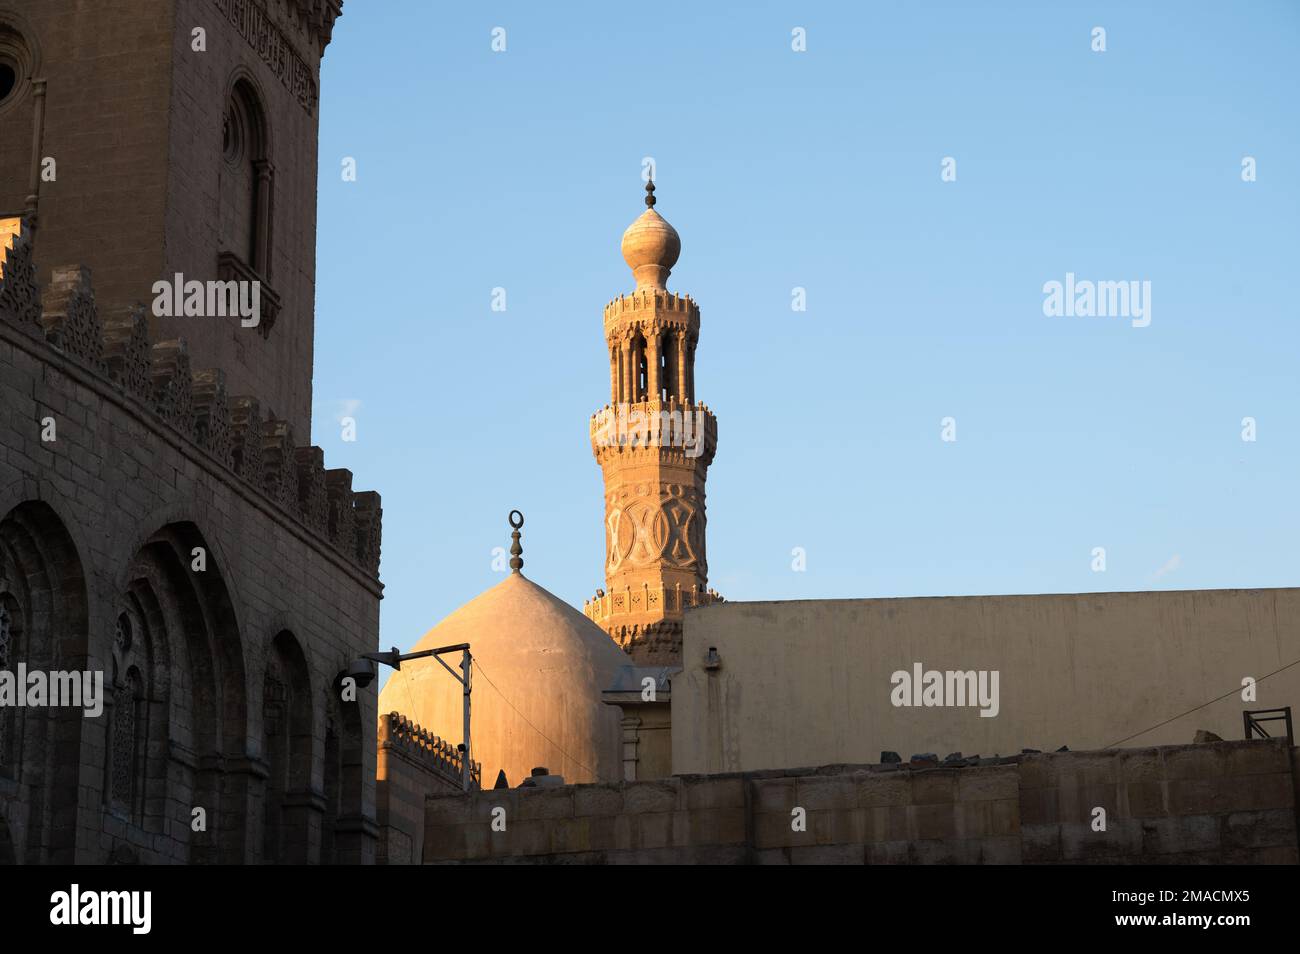 Qalawun Complex, Khan al Khalili, Cairo, Egypt Stock Photo